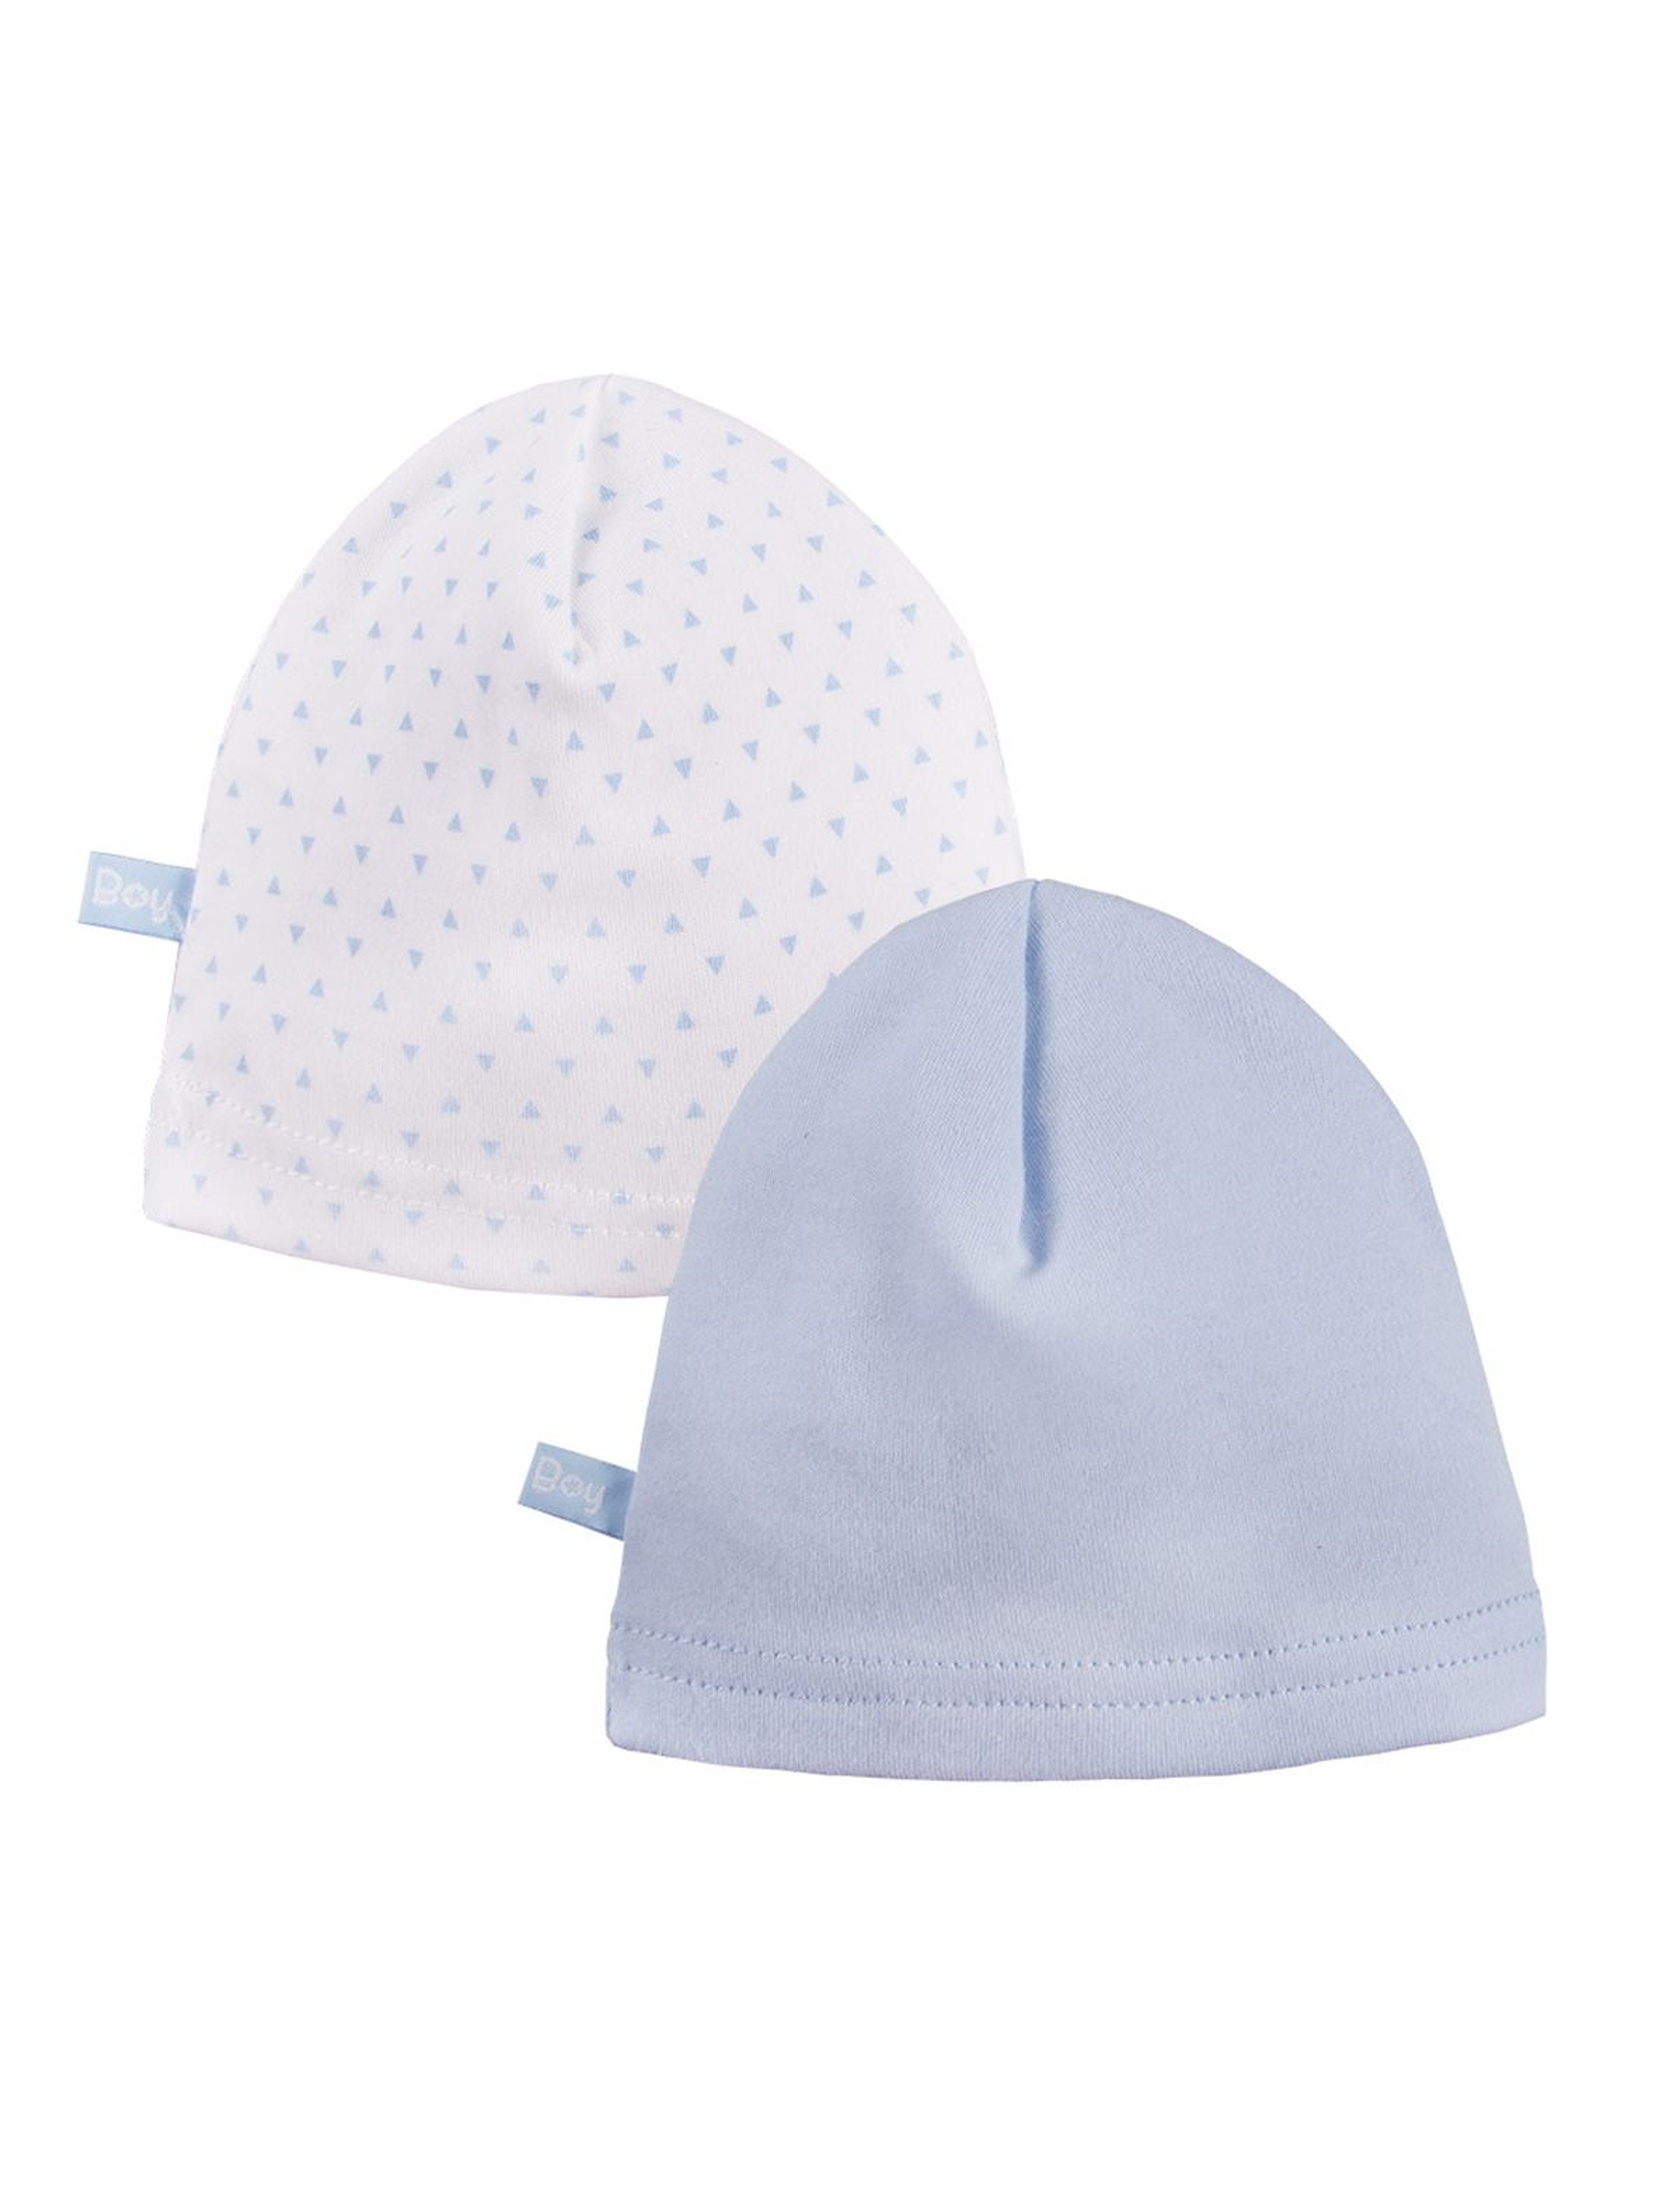 Bawełniane czapki niemowlęce 2pak - niebieskie